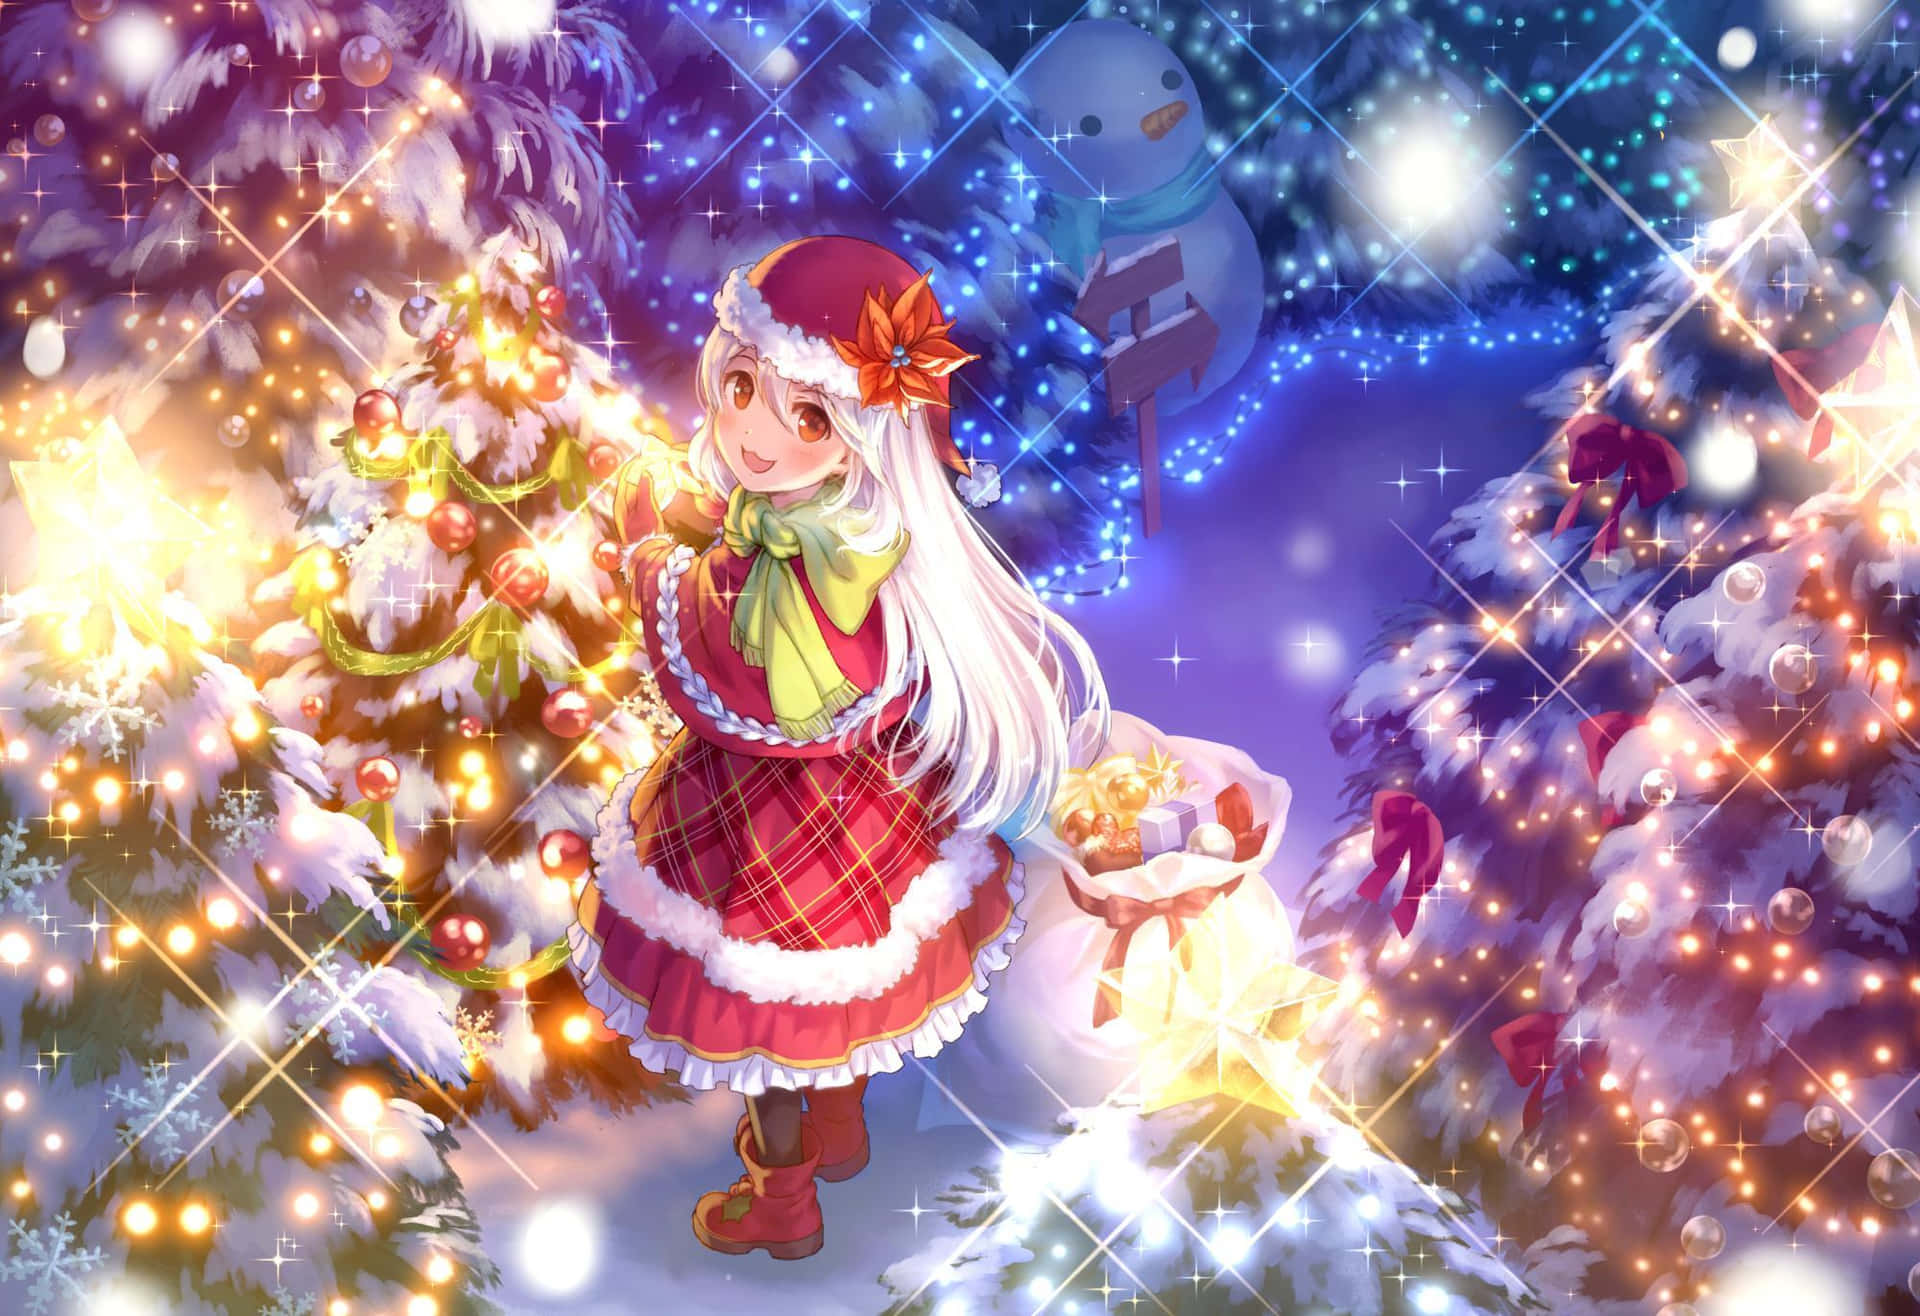 Imagende Anime De Una Chica Santa En Dibujo Animado Para Navidad.